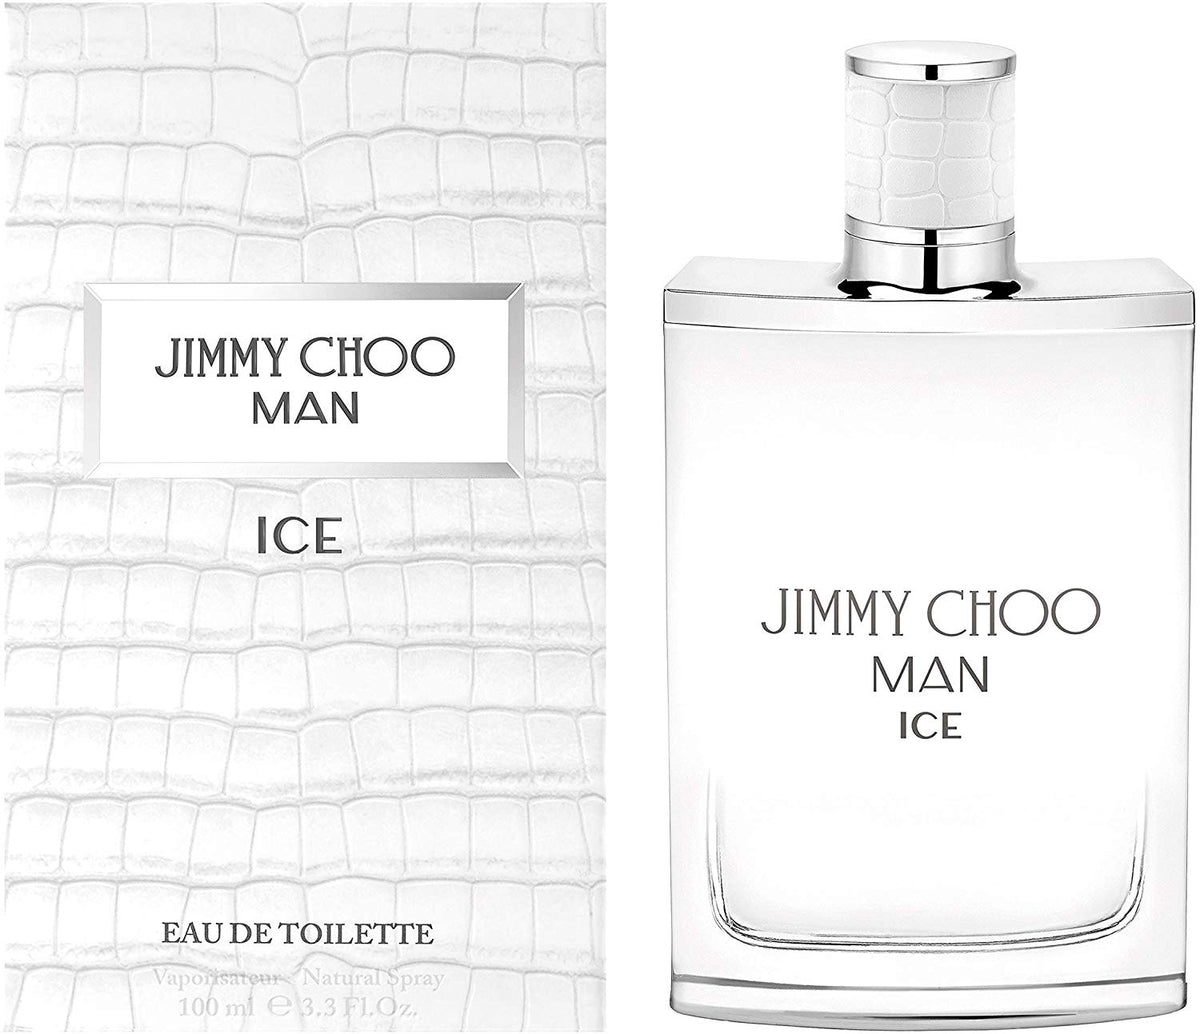 Jimmy Choo Man Ice for Men - Eau De Toilette - 100ml